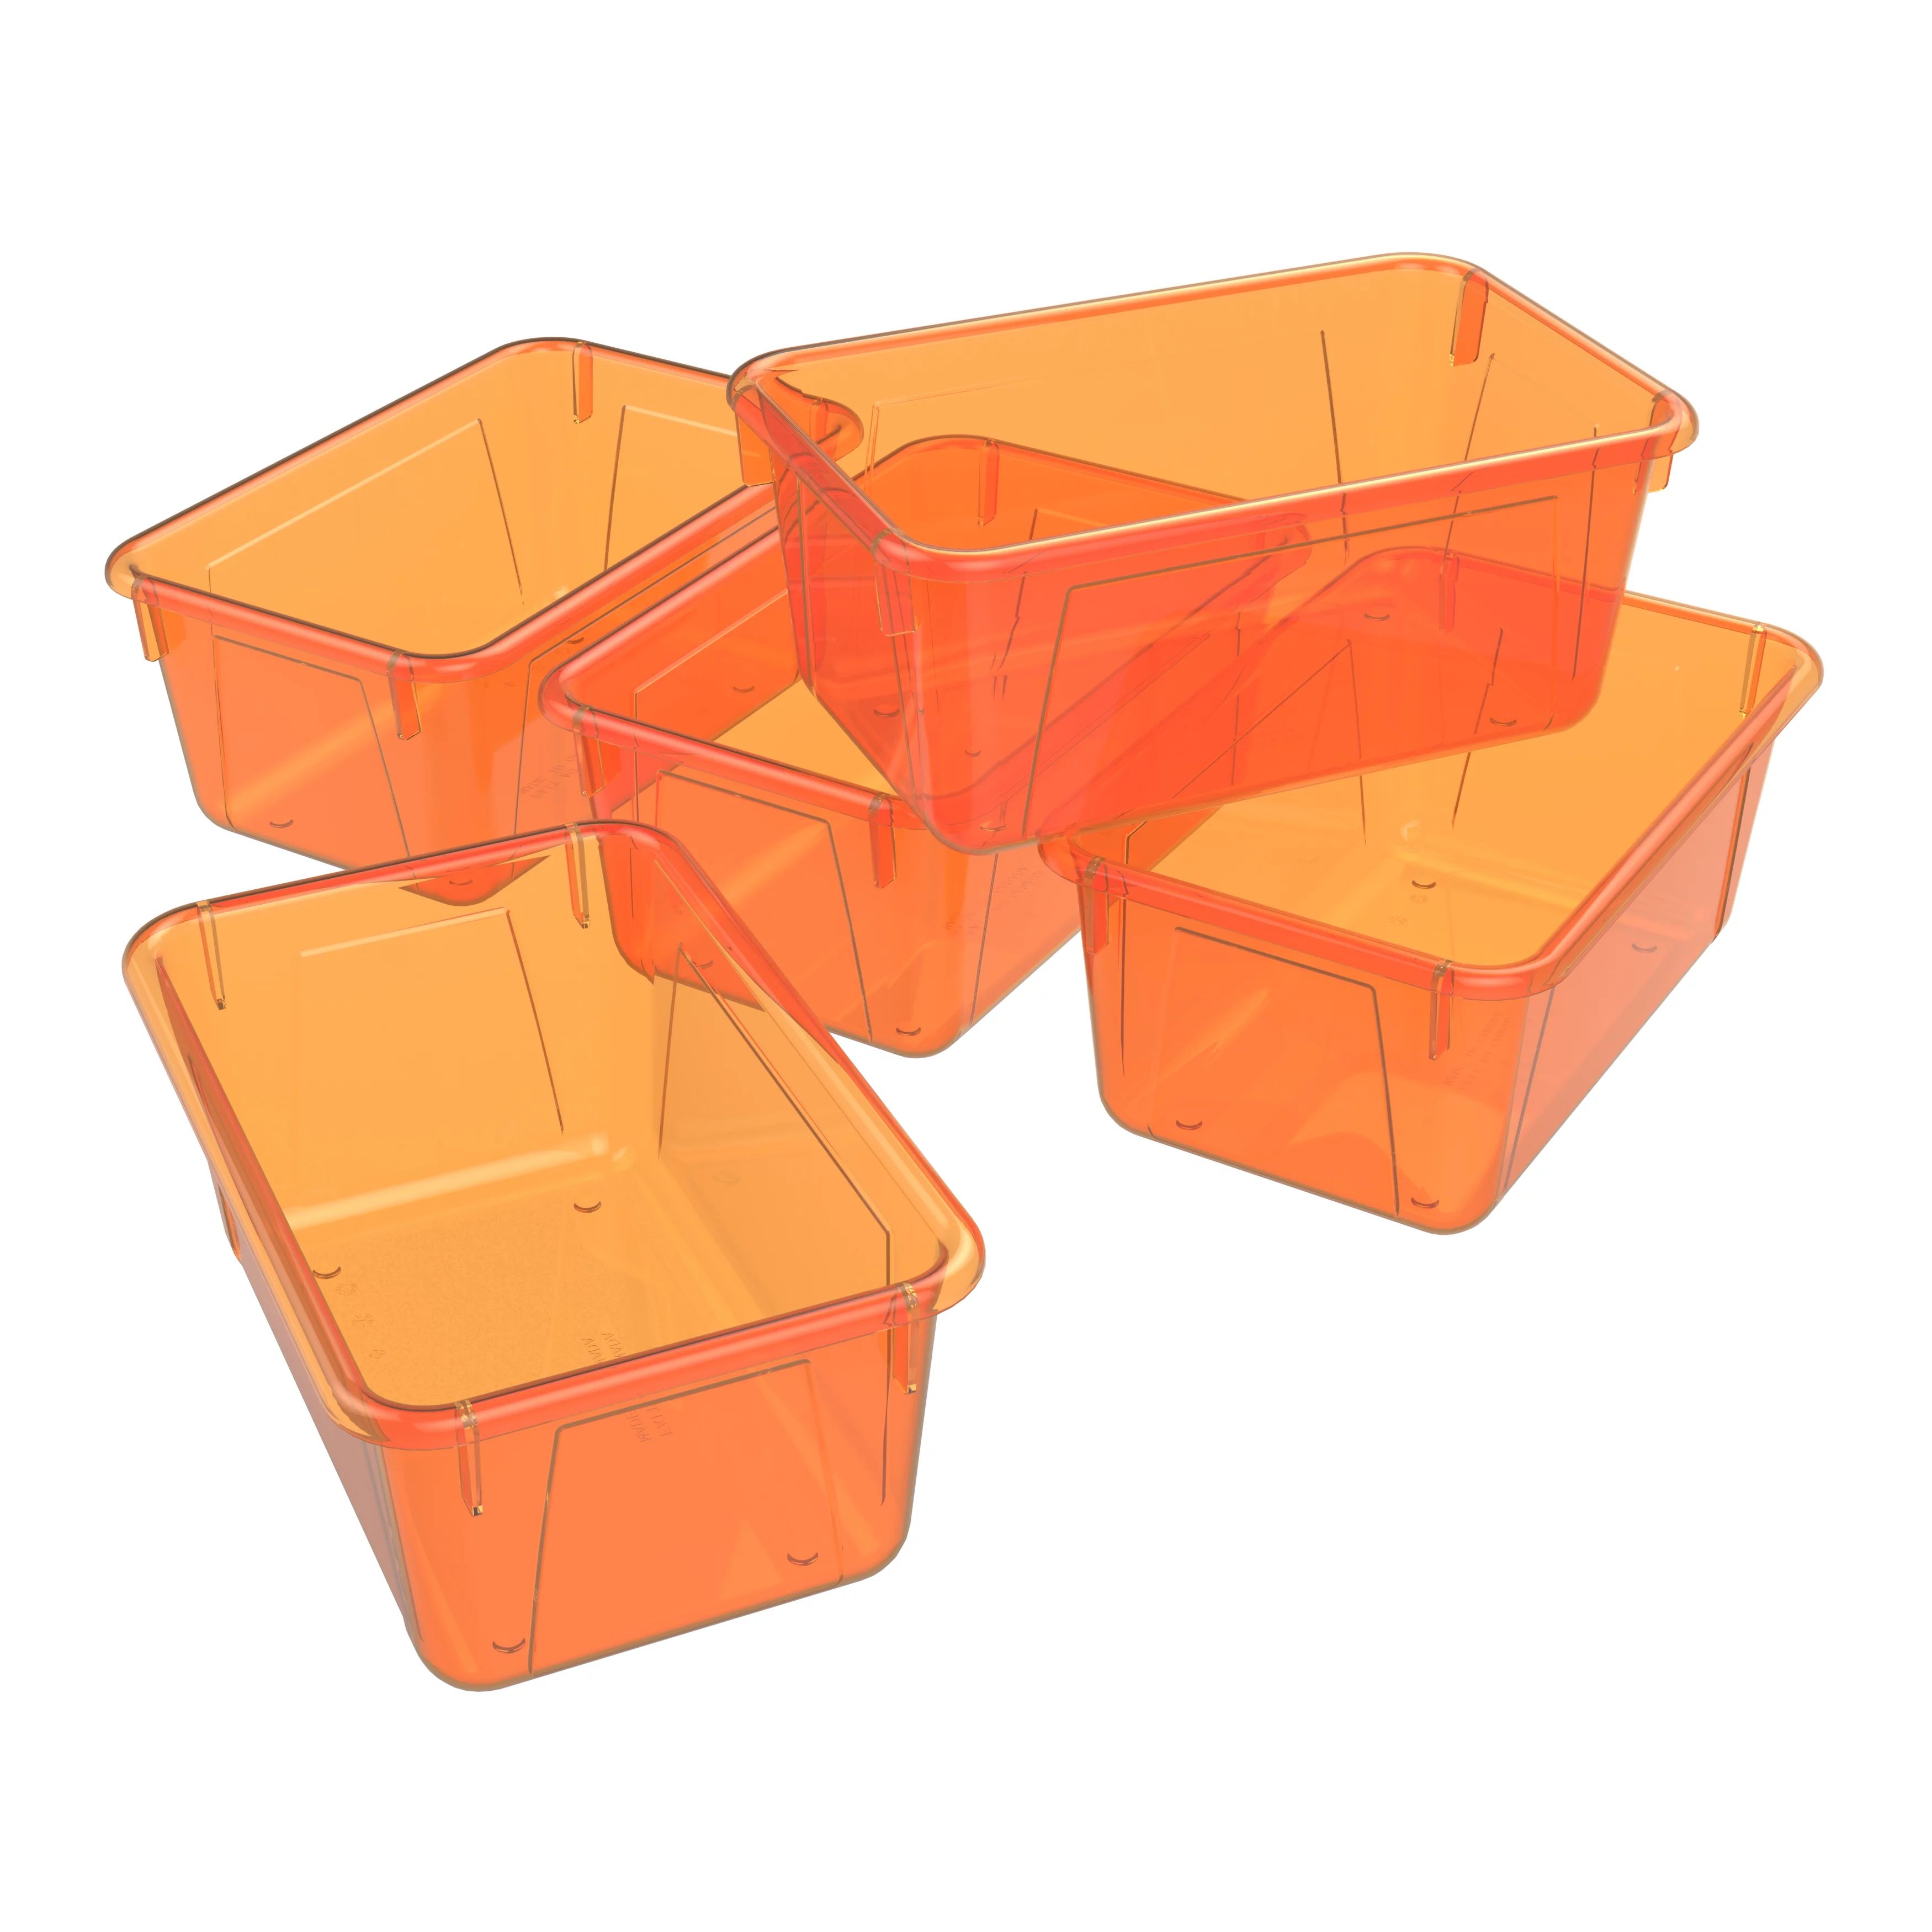 Storex Plastic Cubby Bin, Kids' Craft and Supply Storage, Candy Orange, 5-Pack | Walmart (US)